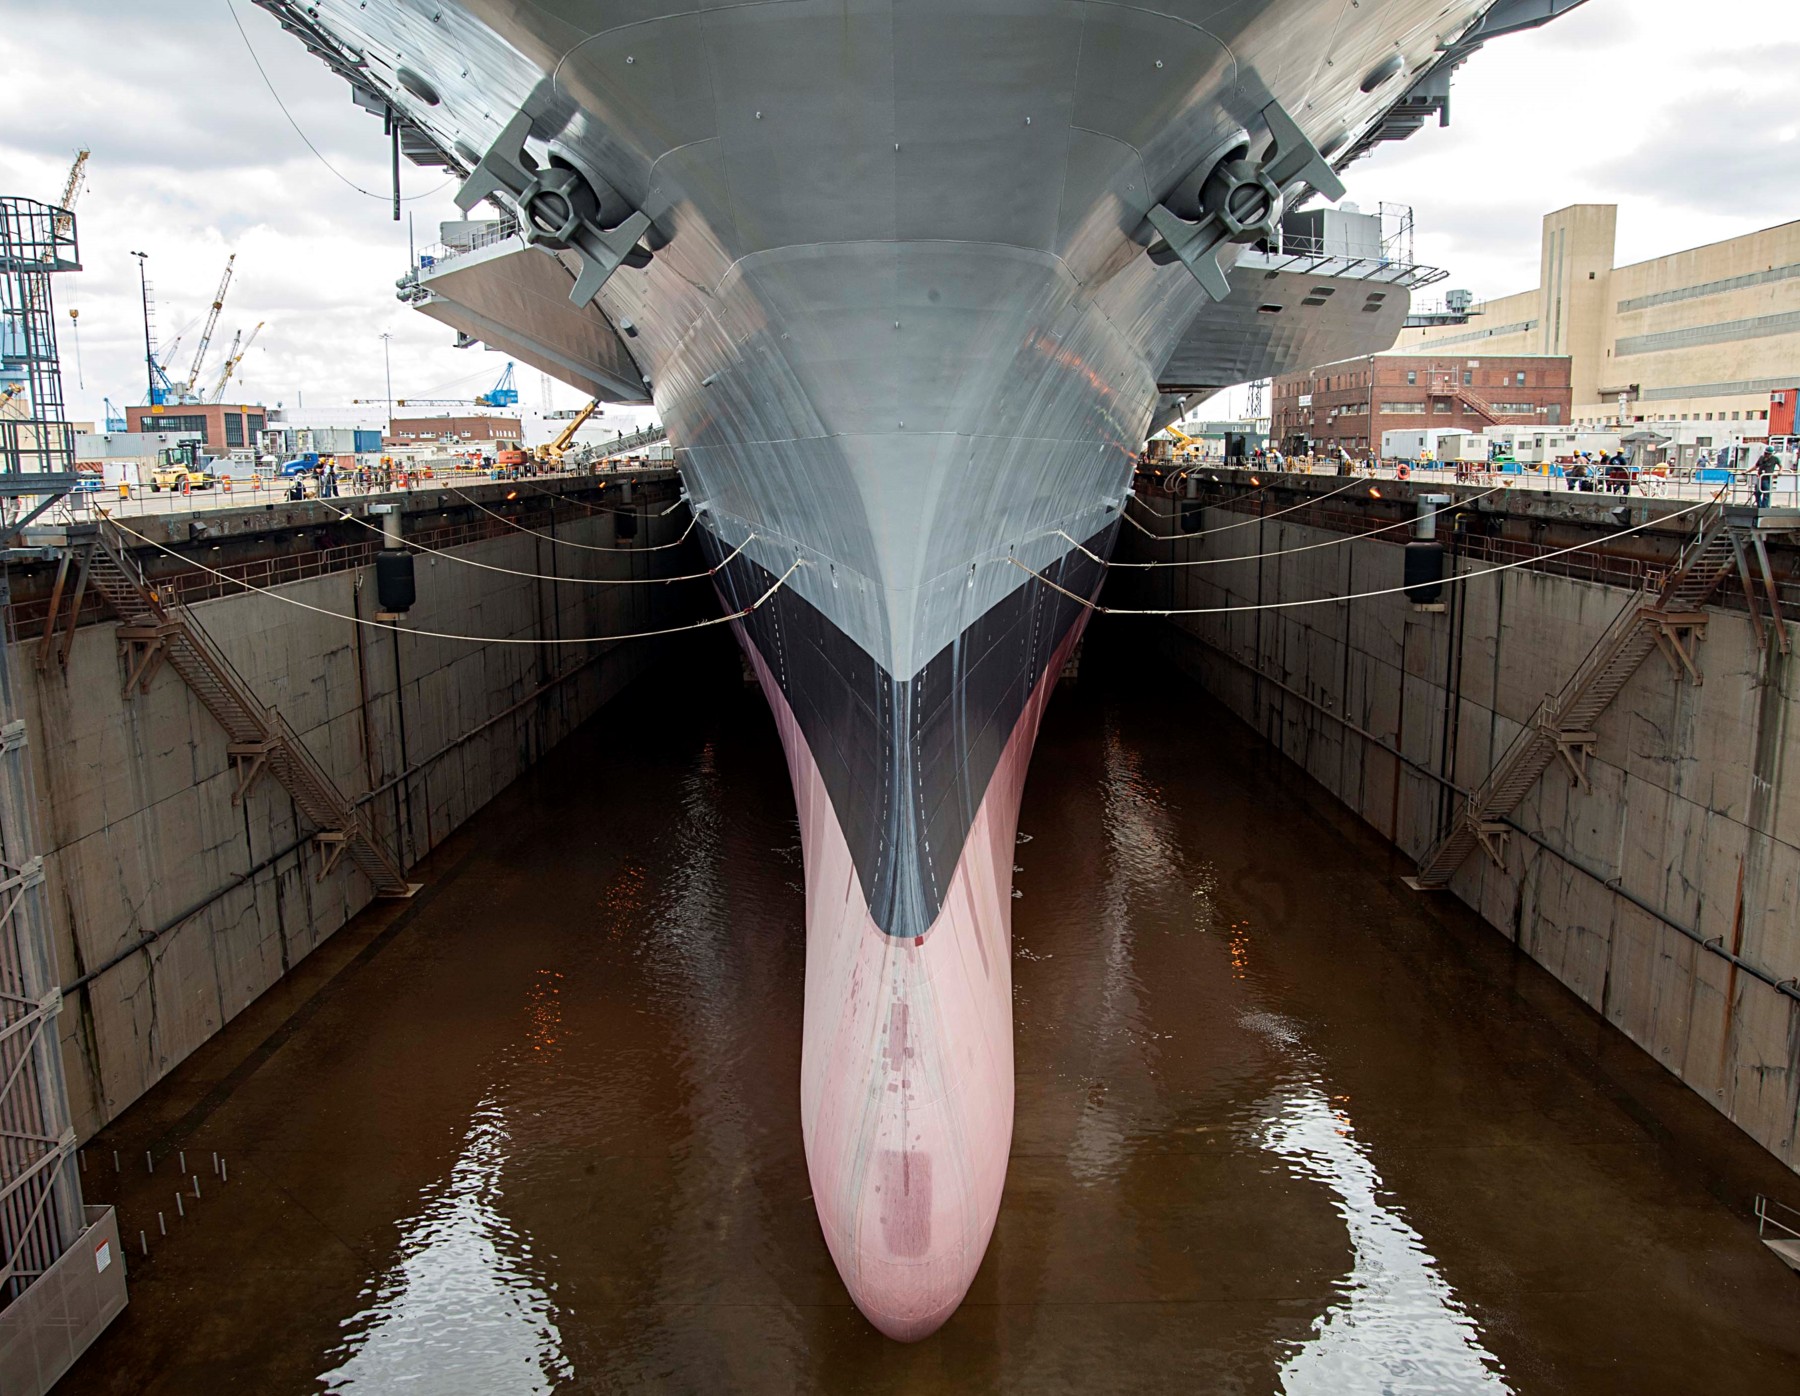 cvn-69 uss dwight d. eisenhower aircraft carrier us navy norfolk naval shipyard dry dock 64